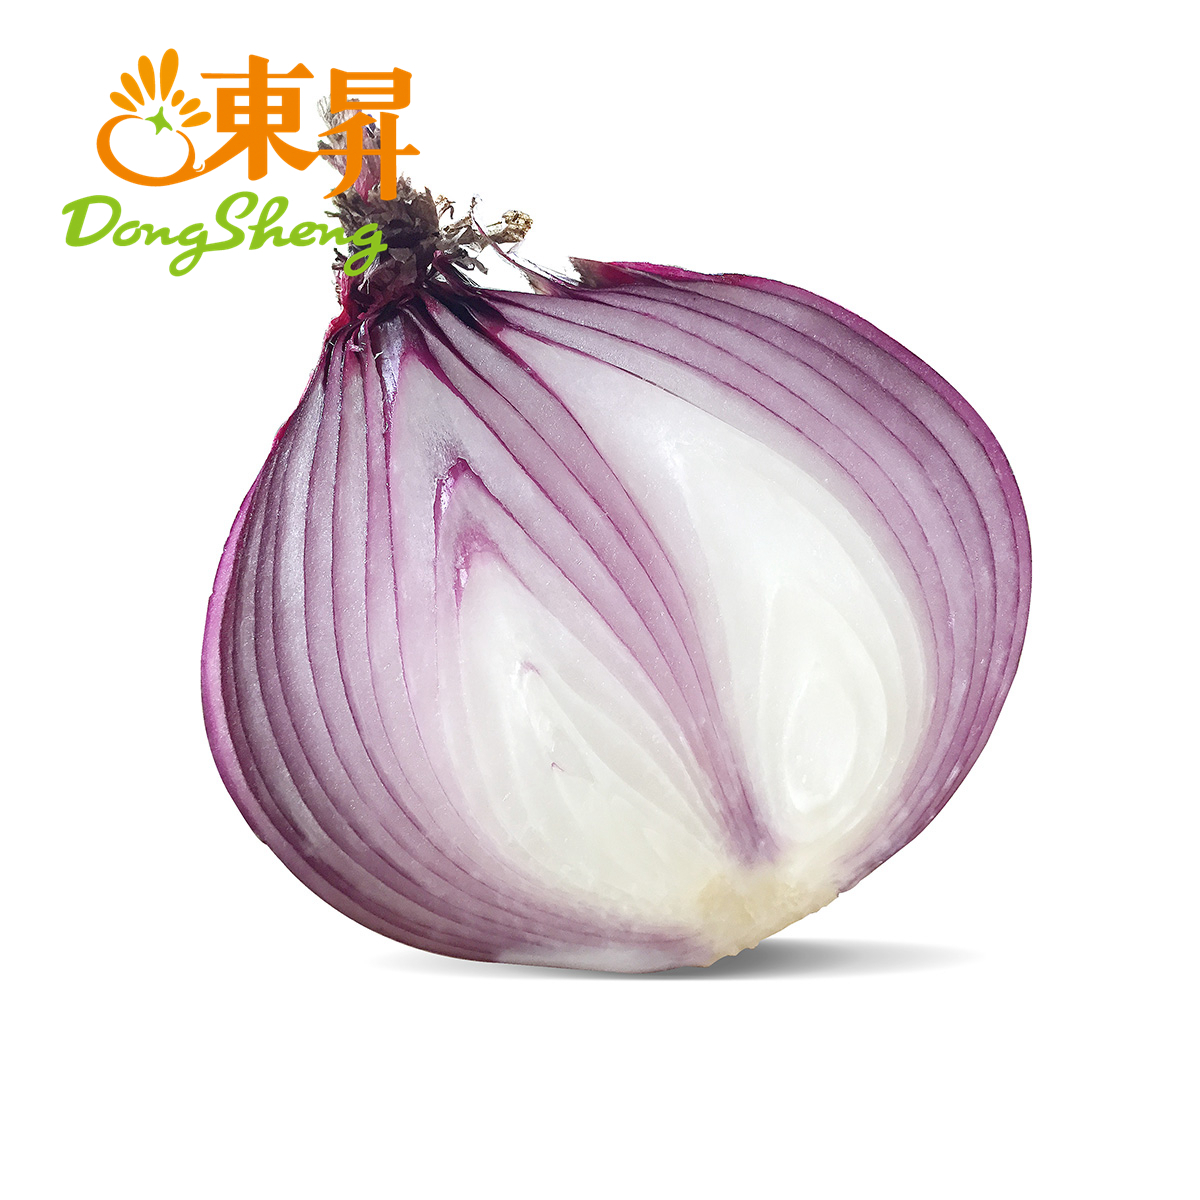 东升农场 红洋葱 紫洋葱洋葱头圆葱 广州蔬菜新鲜配送 500g